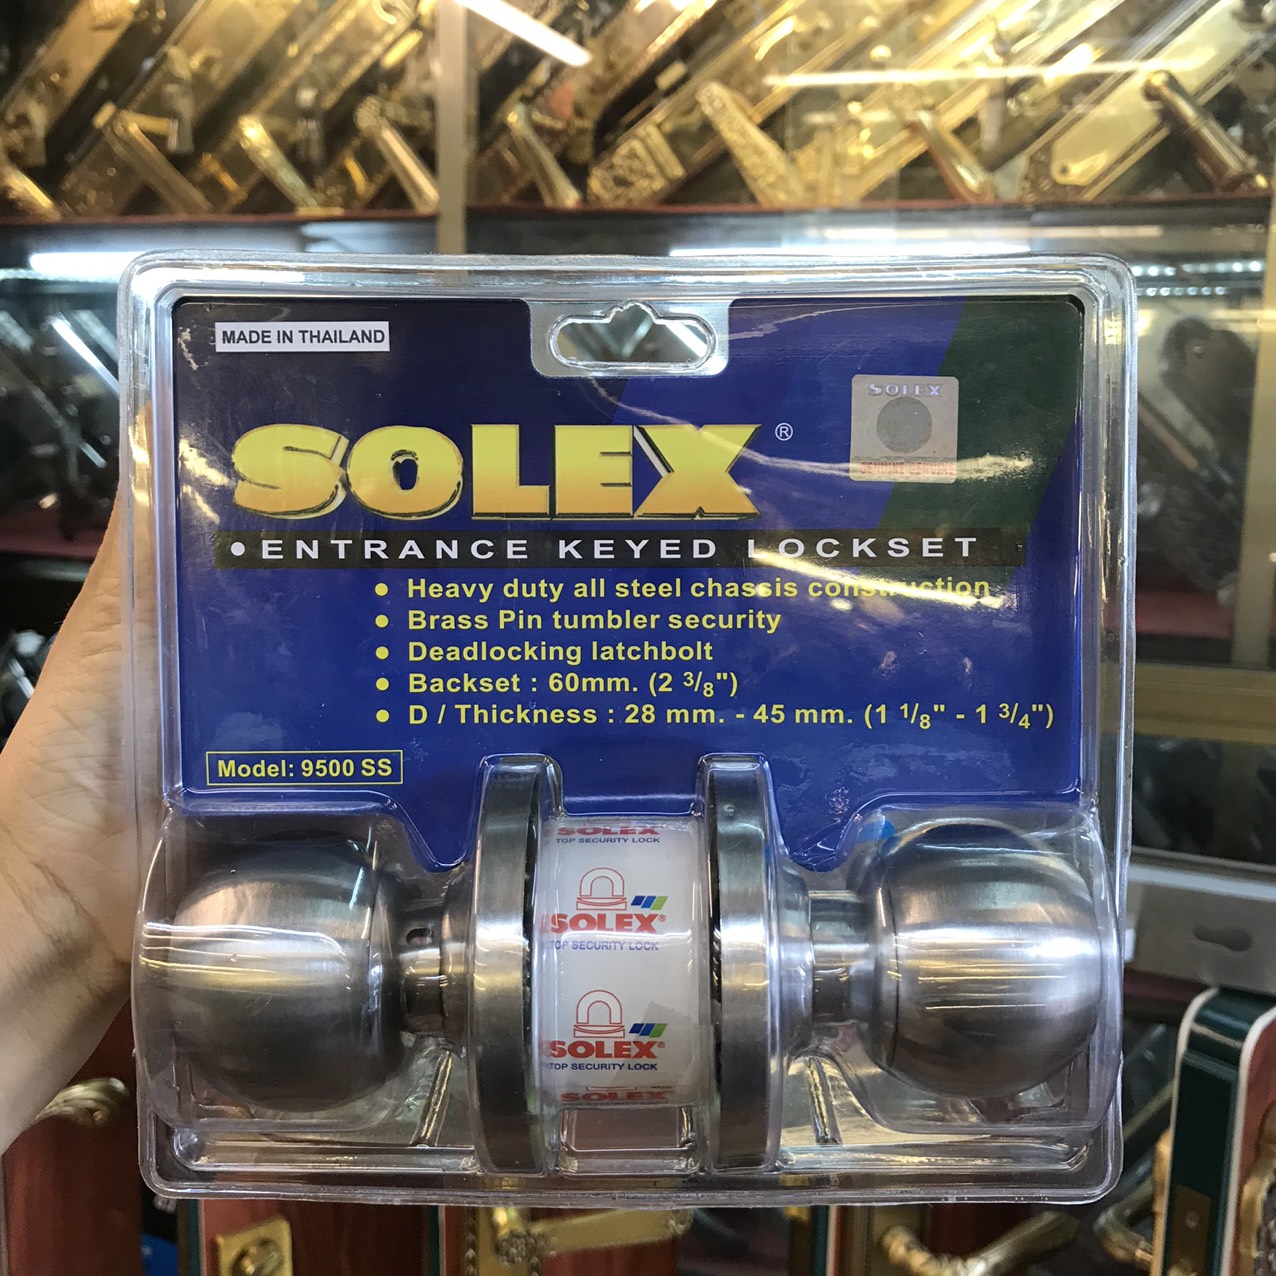 Khóa tay nắm tròn Solex, khóa đấm tròn inox 304 Solex - nhập khẩu Thái Lan